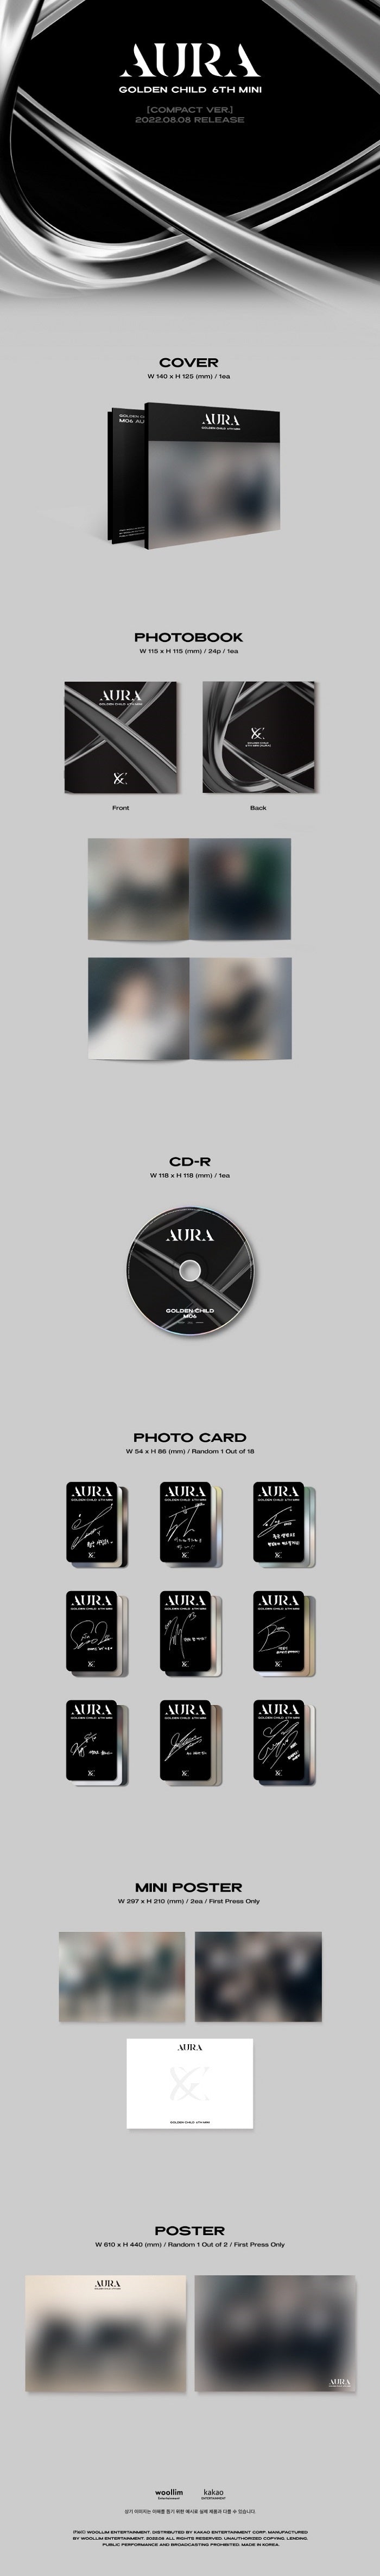 Golden Child - AURA (6th Mini Album) Compact Ver.